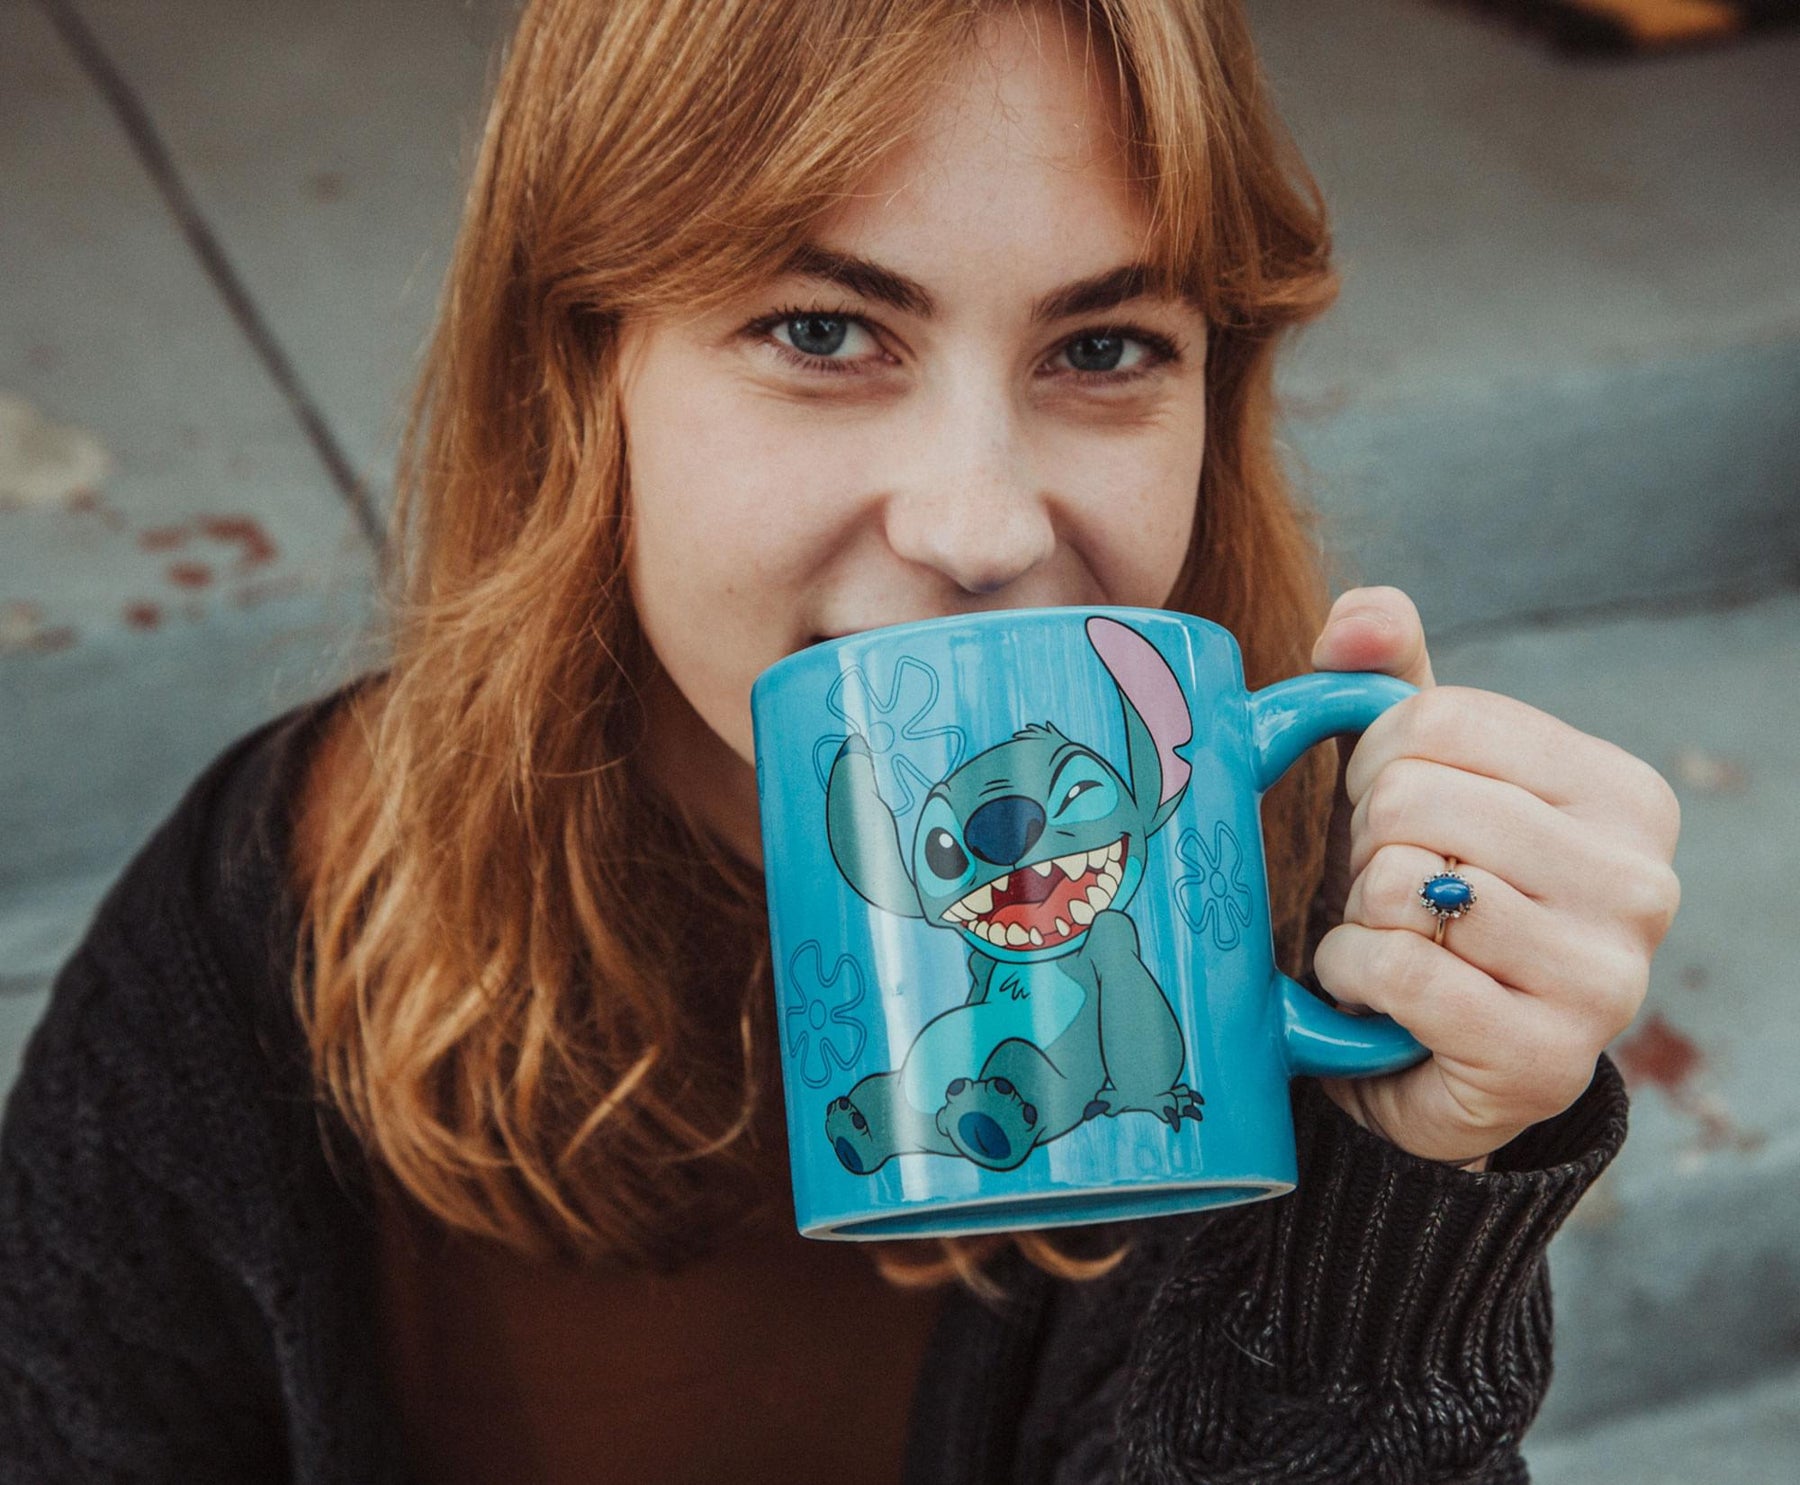 Disney Lilo & Stitch Ceramic Mug With Sculpted Topper | Holds 18 Ounces